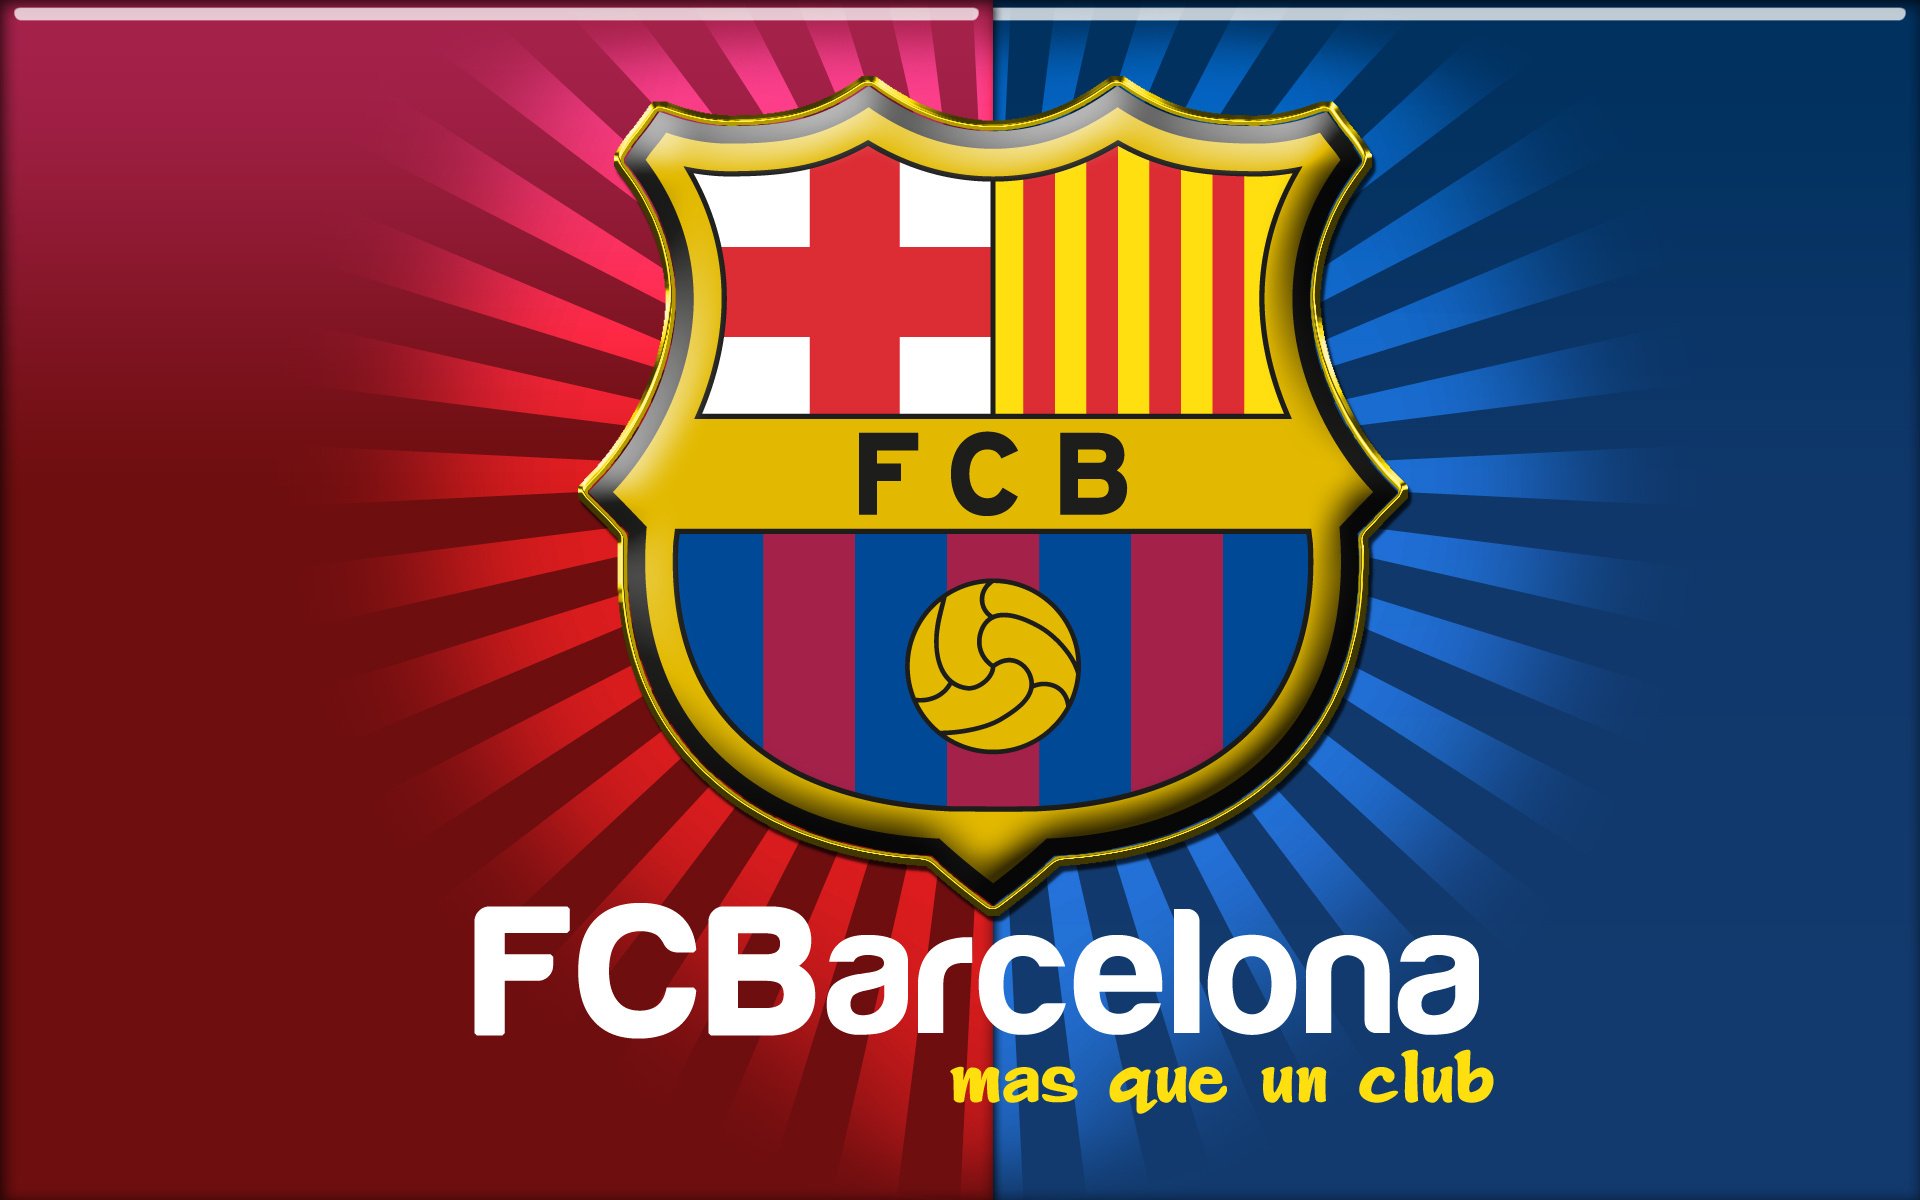 spain, Barcelona, Aeyaeyfc, Soccer Wallpaper